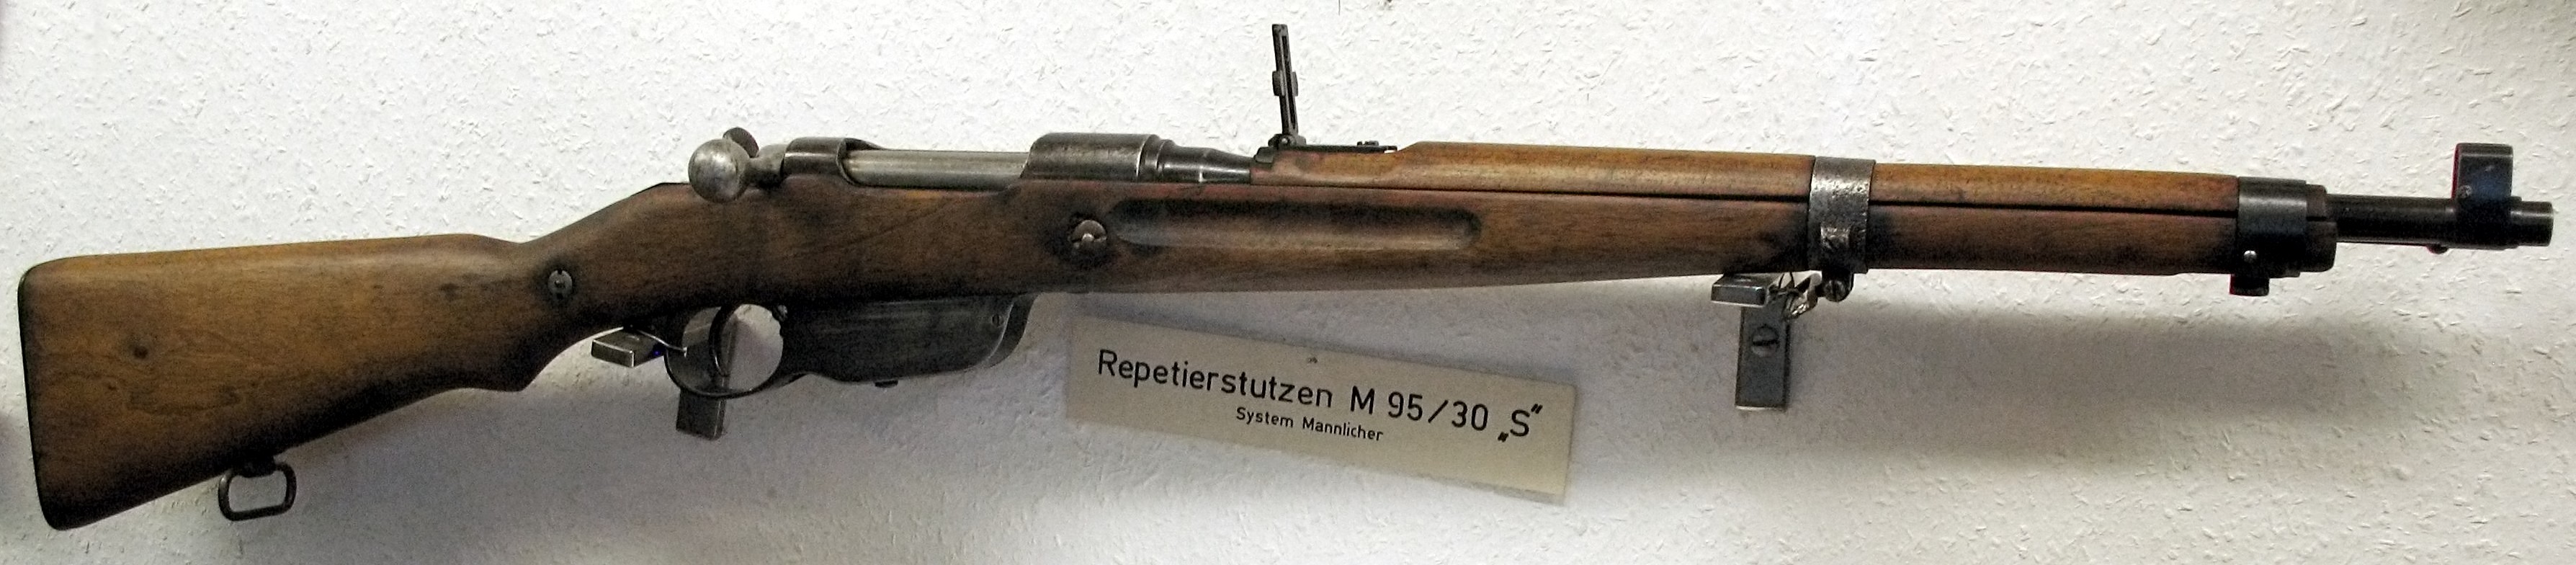 Steyr-Mannlicher M1895/30 rifle on display at Hohensalzburg Castle, Salzburg, Austria, 7 Jun 2007